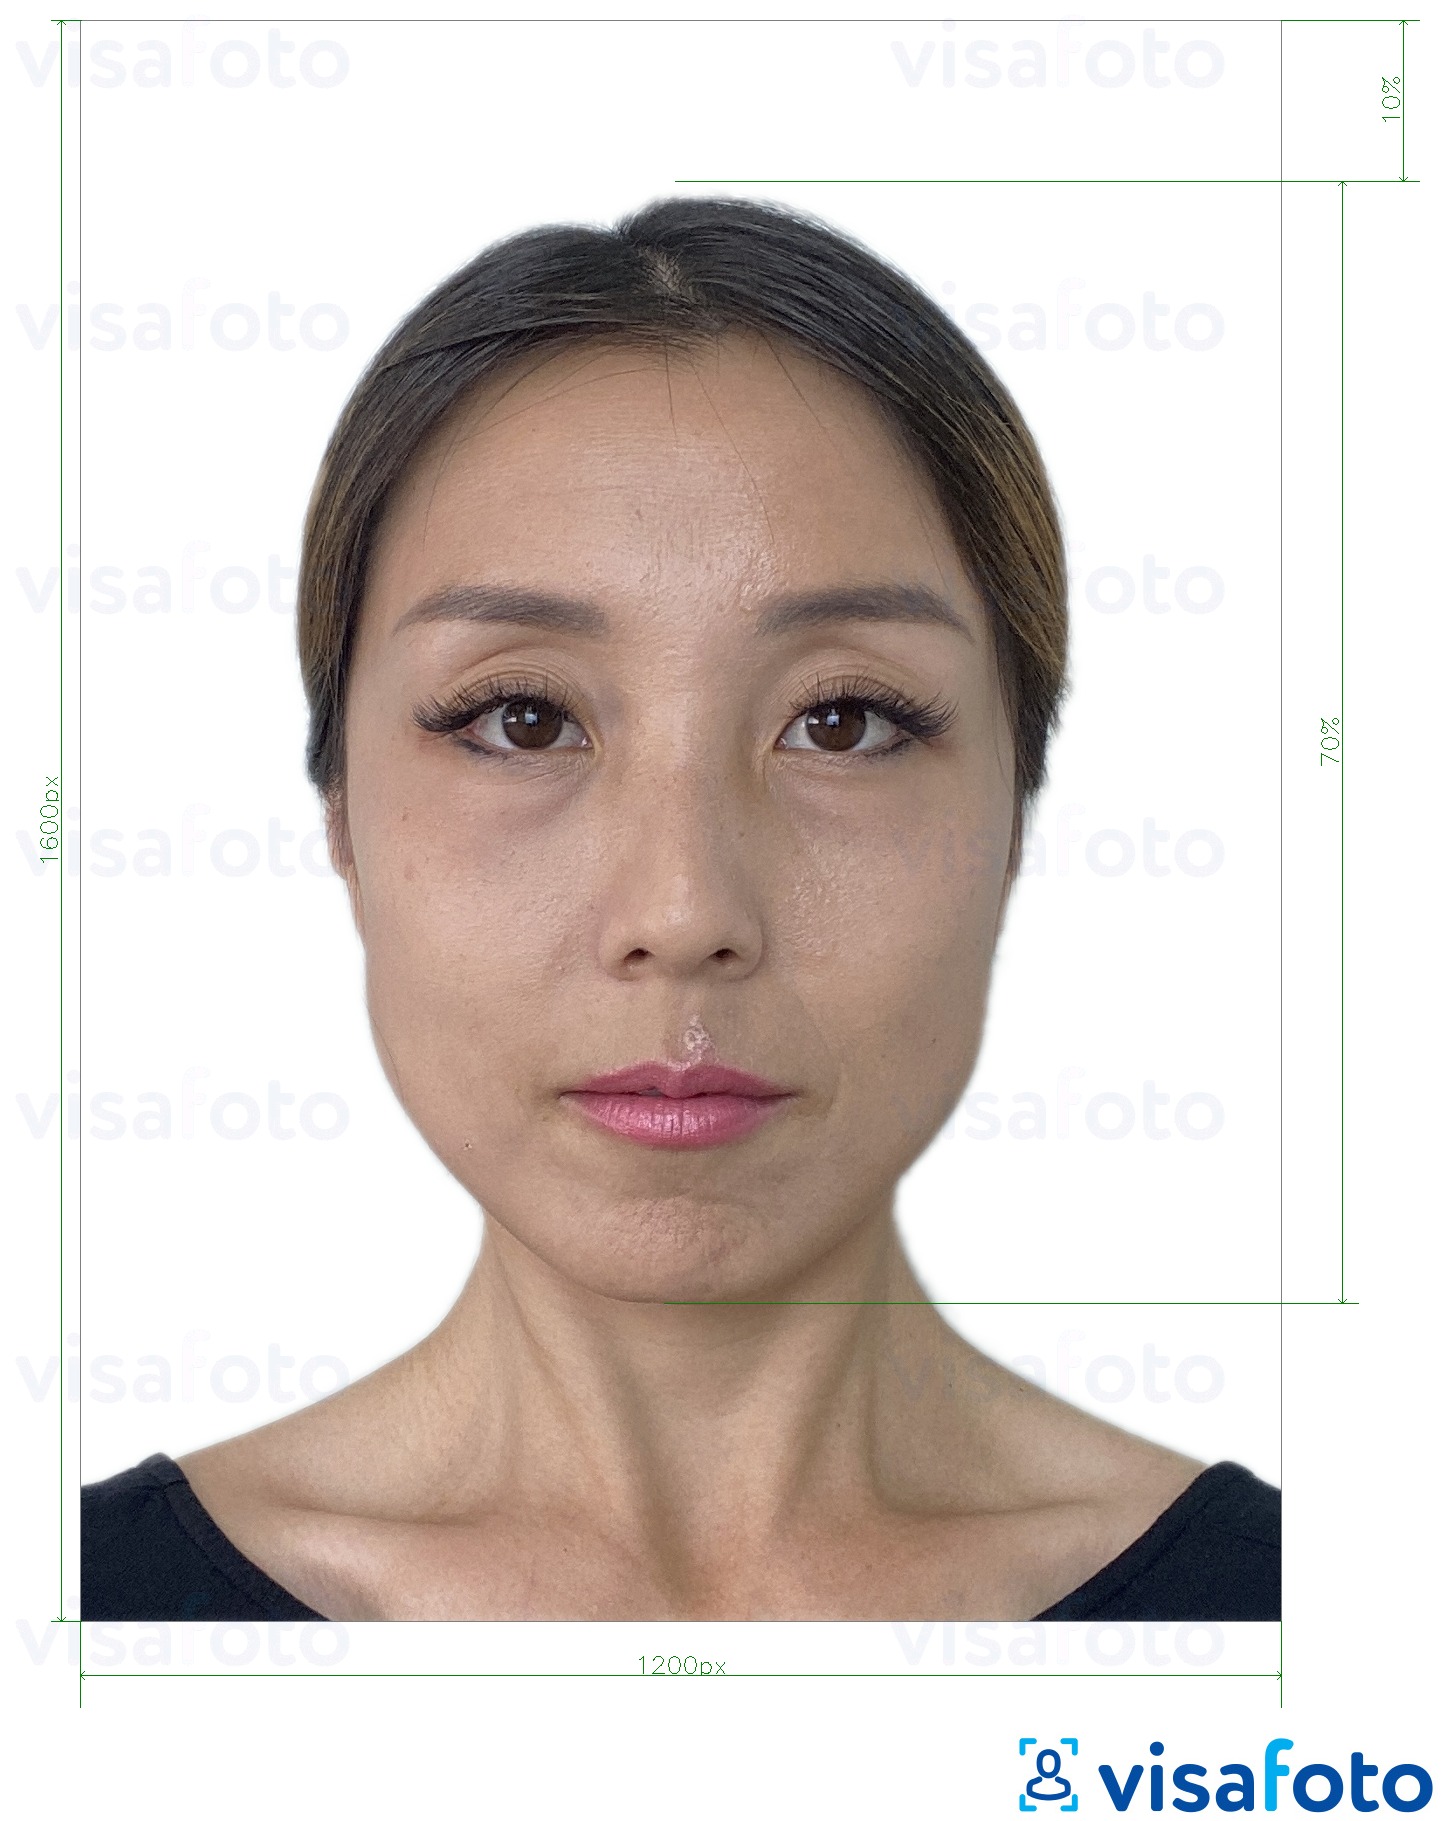 정확한 사이즈 크기의 홍콩 온라인 전자 여권 1200x1600 픽셀 사진의 예